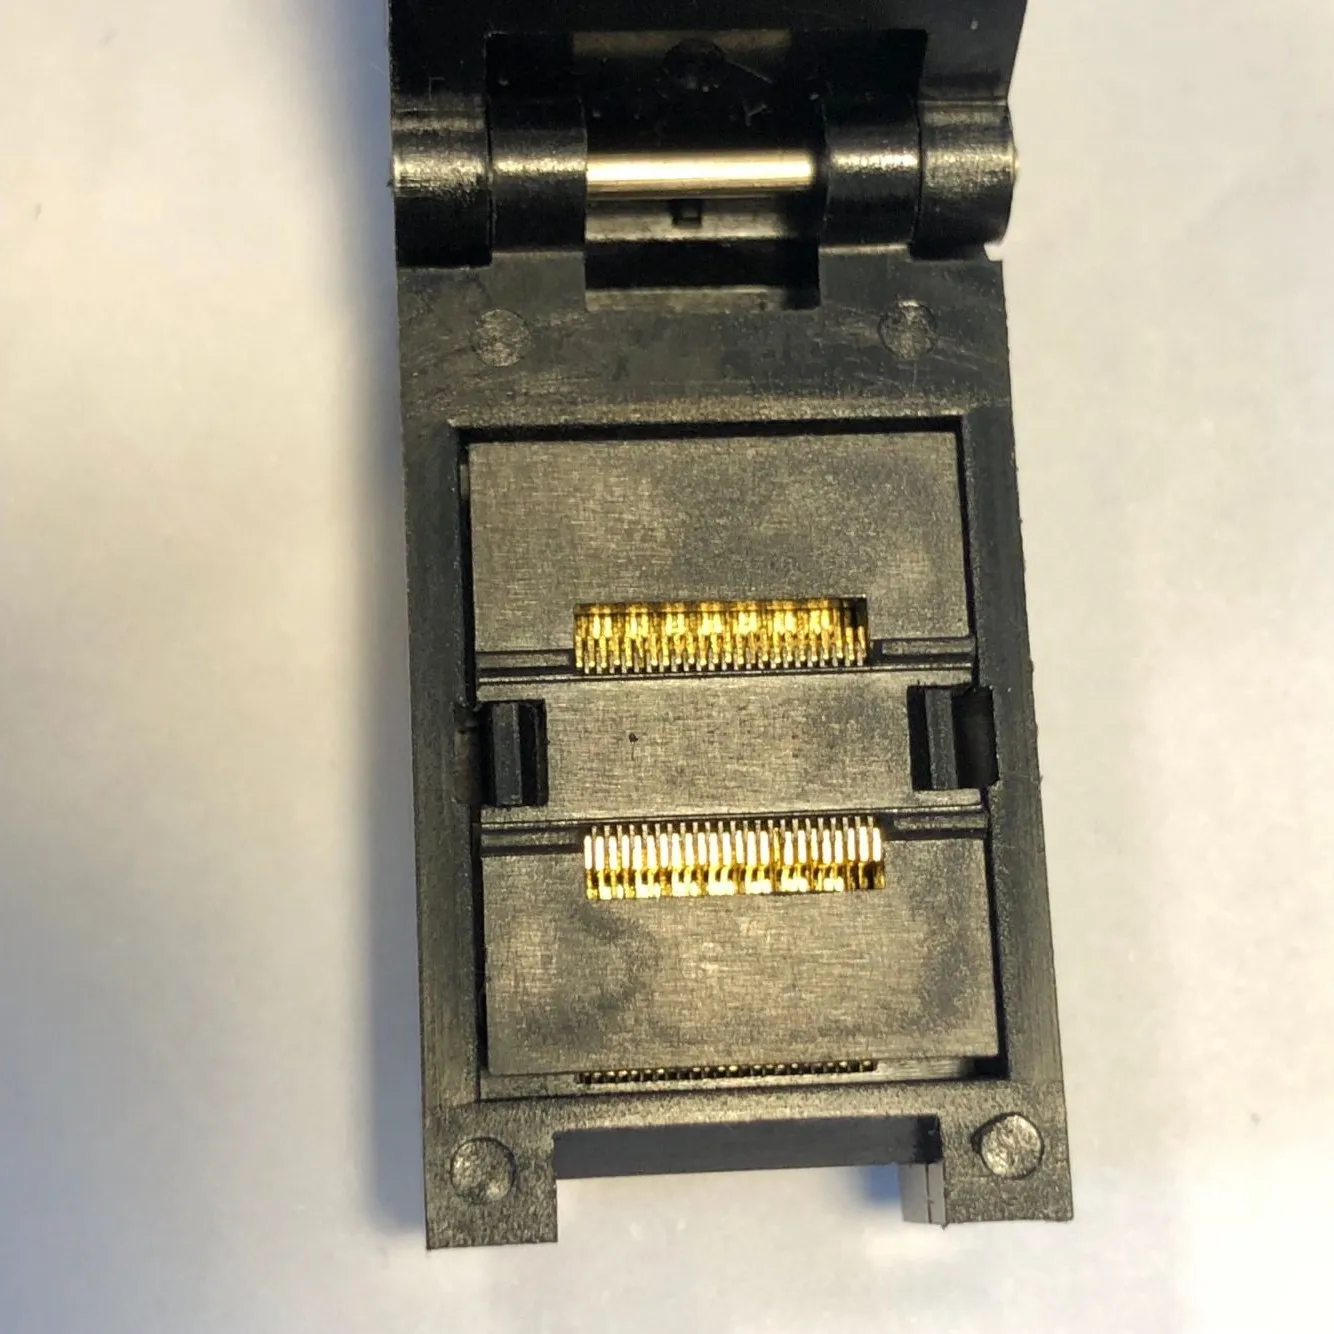 TSSOP48P 0.4mm Pitch IC Test Socket 4.4x6.4mm Burn in Socket